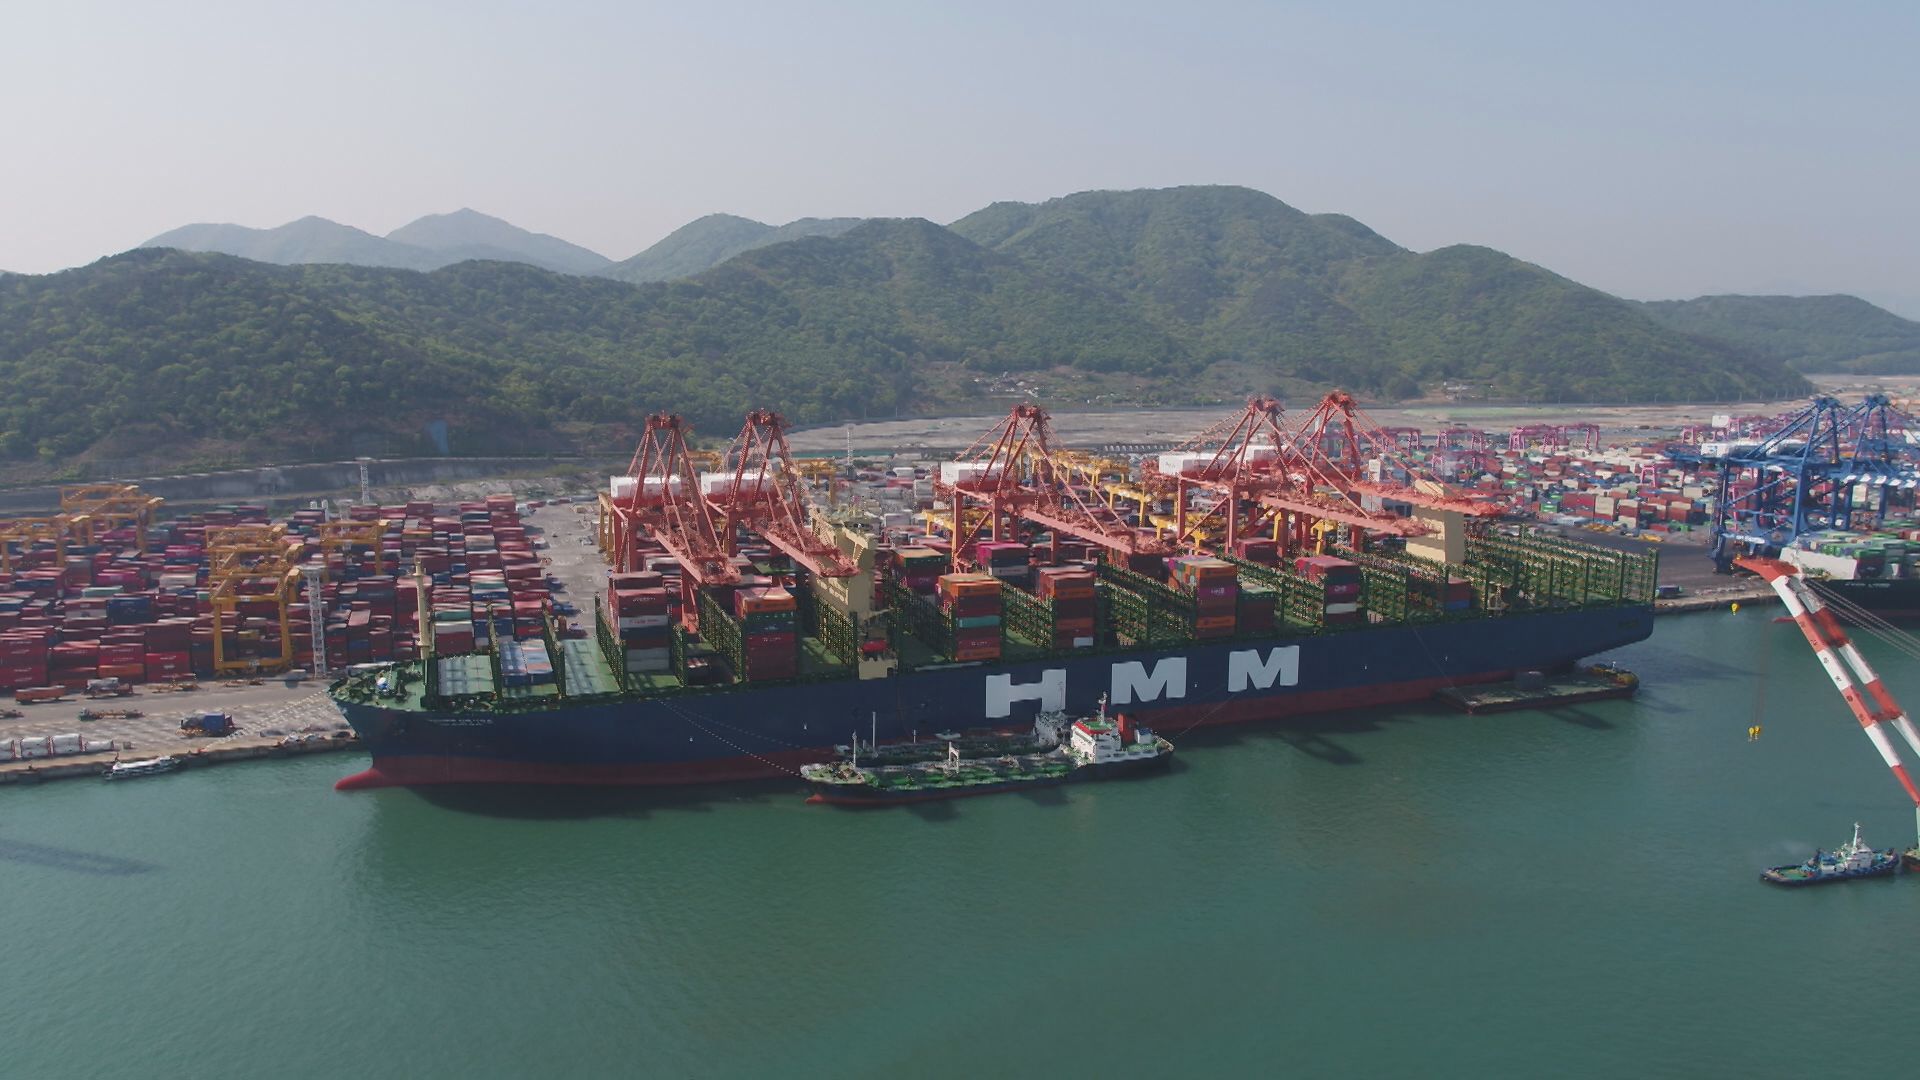 한국 유일의 국적선사인 HMM(전 현대상선)이 지난해 8월부터 지난달까지 임시 선박 21척을 투입했지만 턱없이 부족하다.